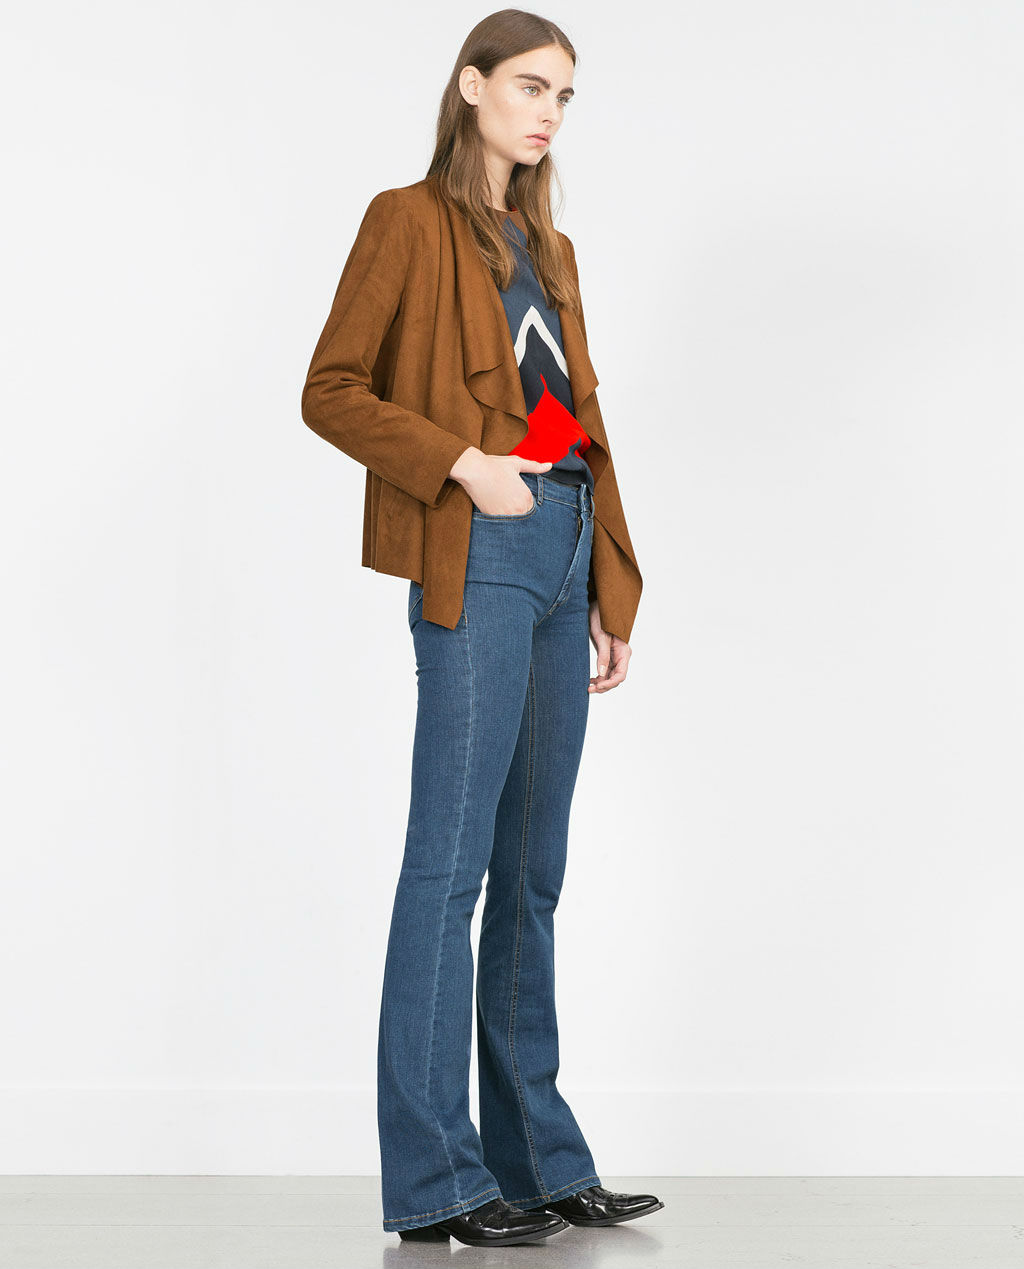 Jeans de Zara que querrás lucir sí o este otoño invierno 2015/16 -